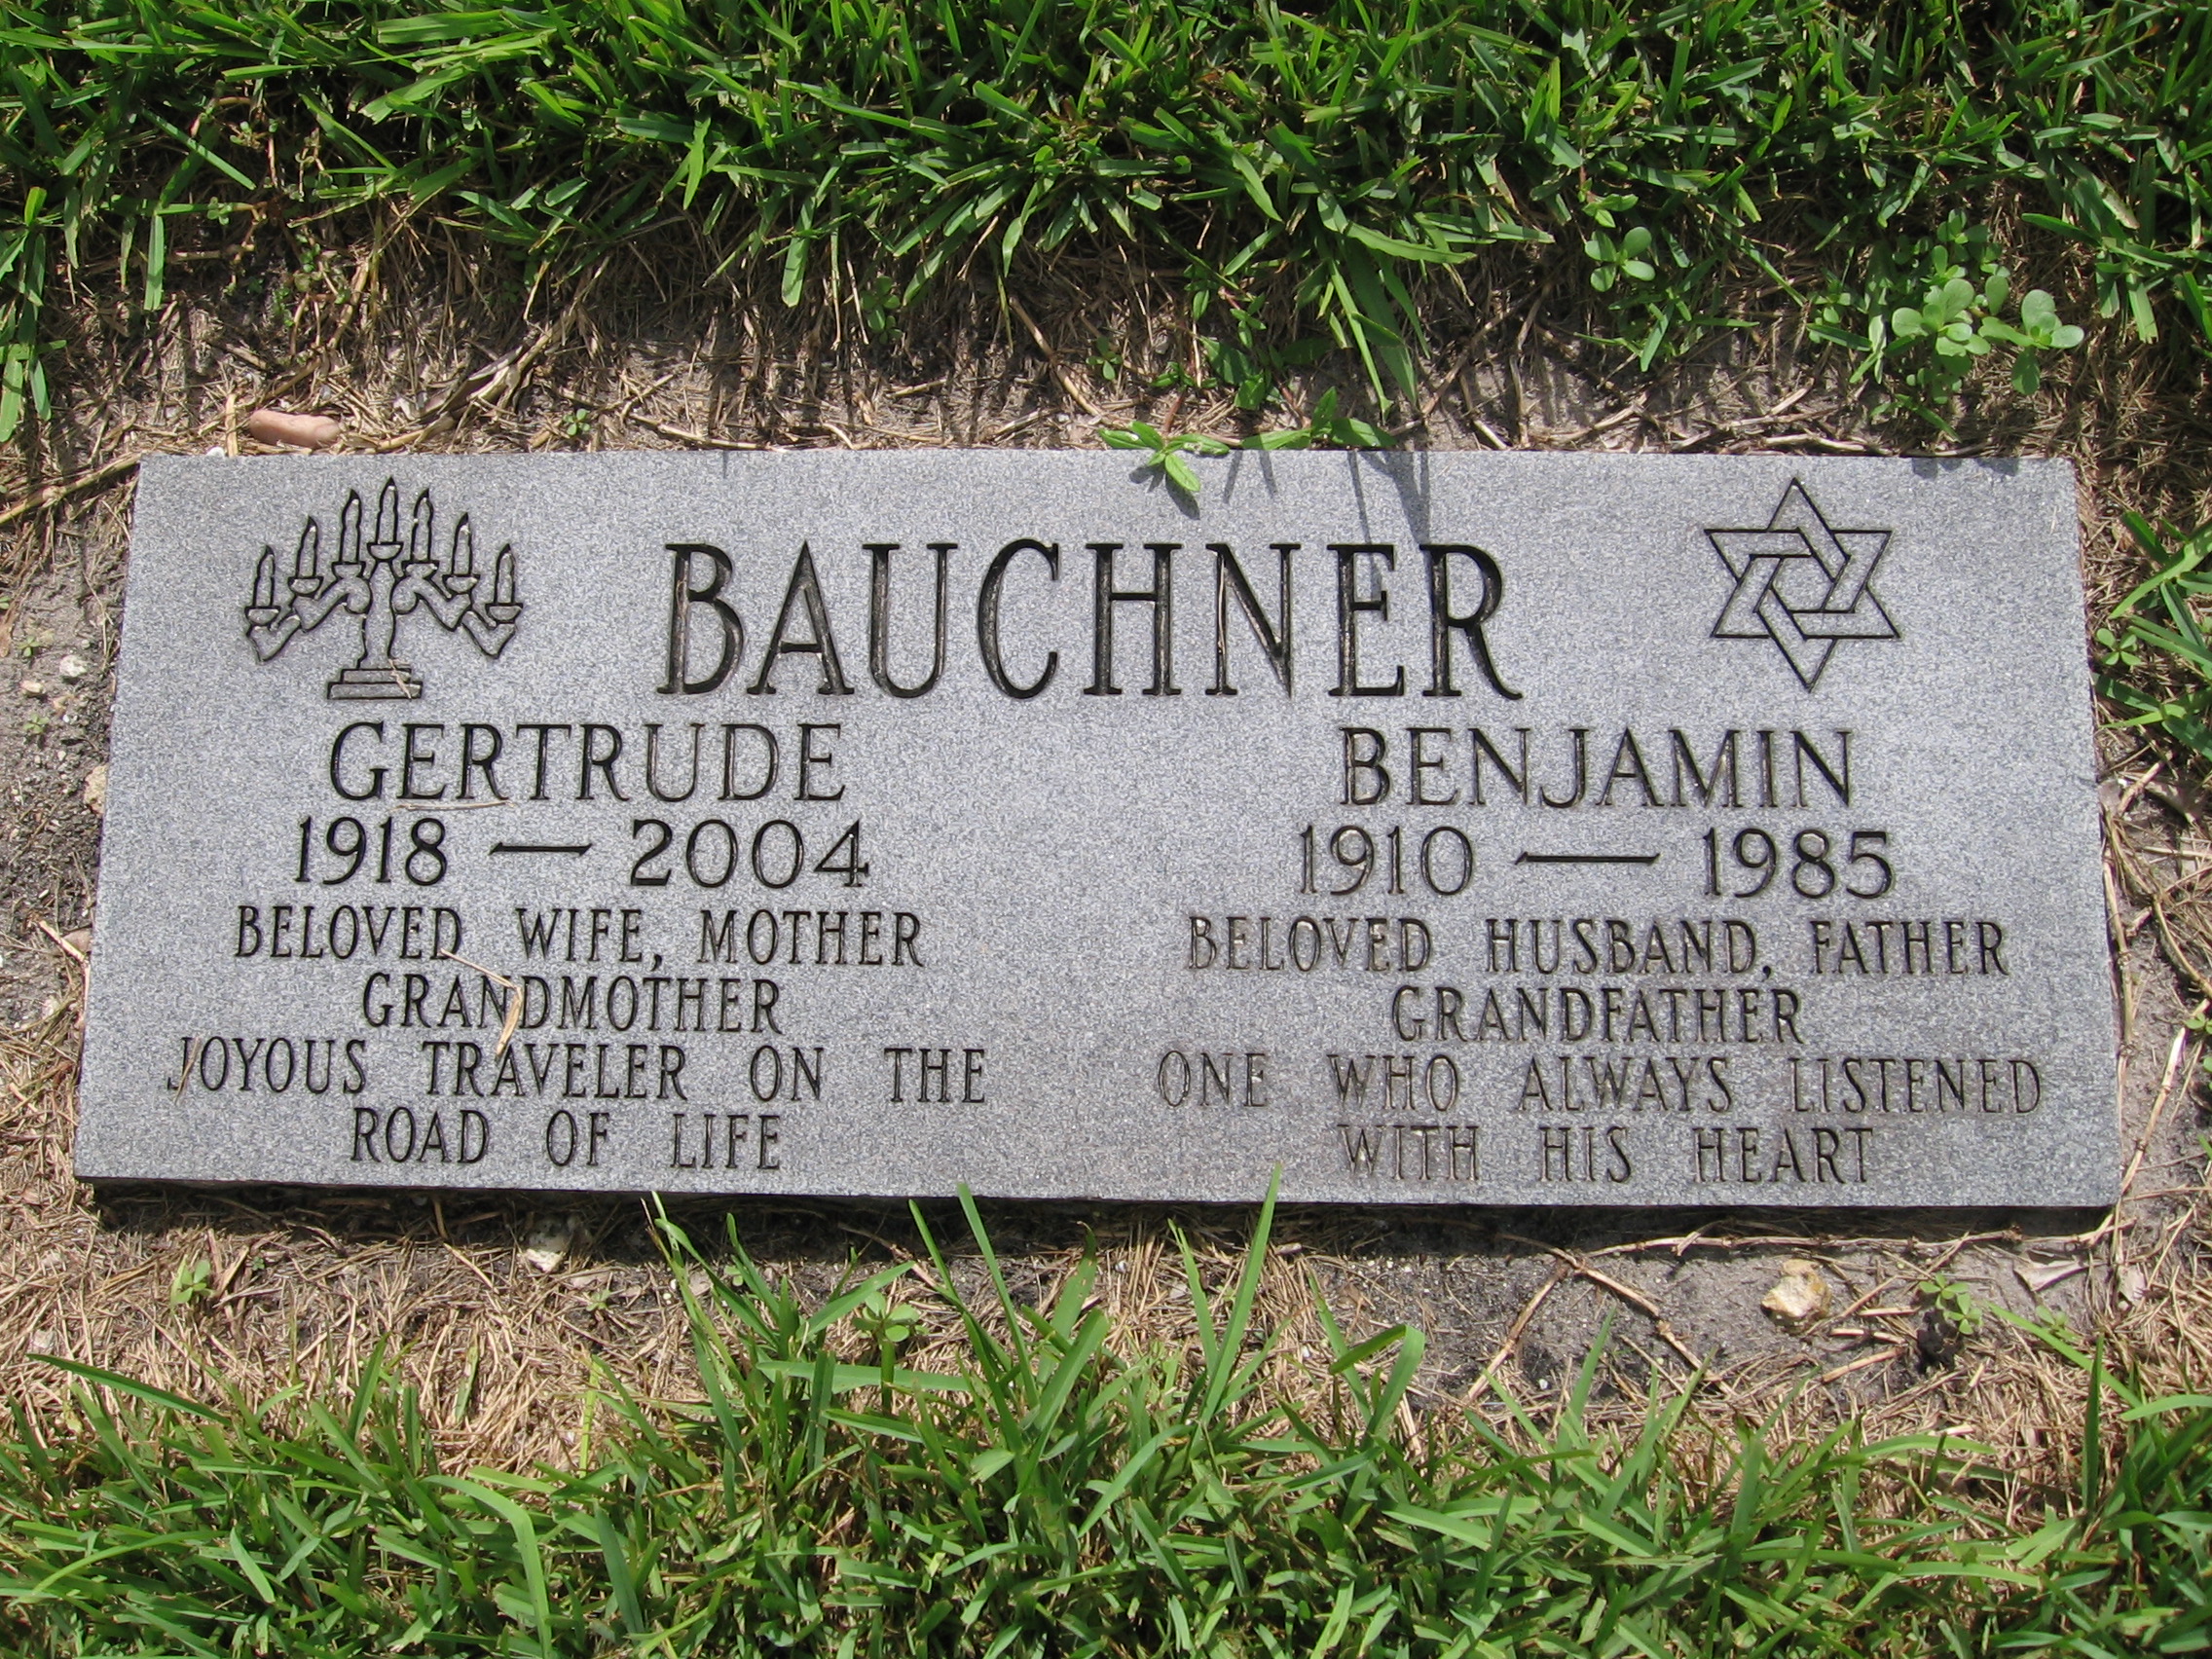 Gertrude Baucher